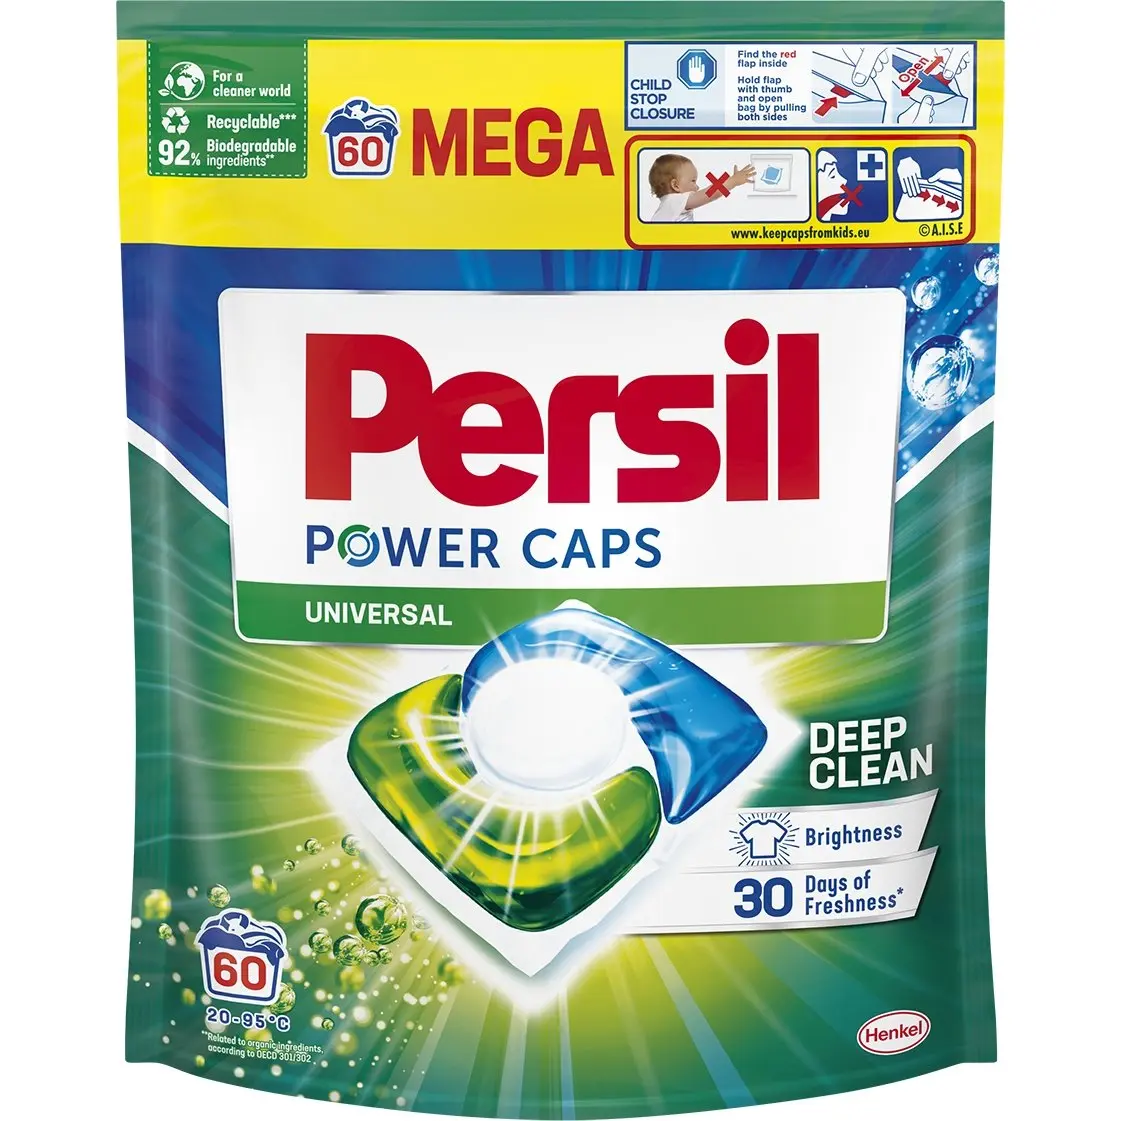 Набір: Капсули для прання Persil Color Power Caps 60 шт. + Капсули для білих та світлих речей Persil Power Caps Universal Deep Clean 60 шт. - фото 3